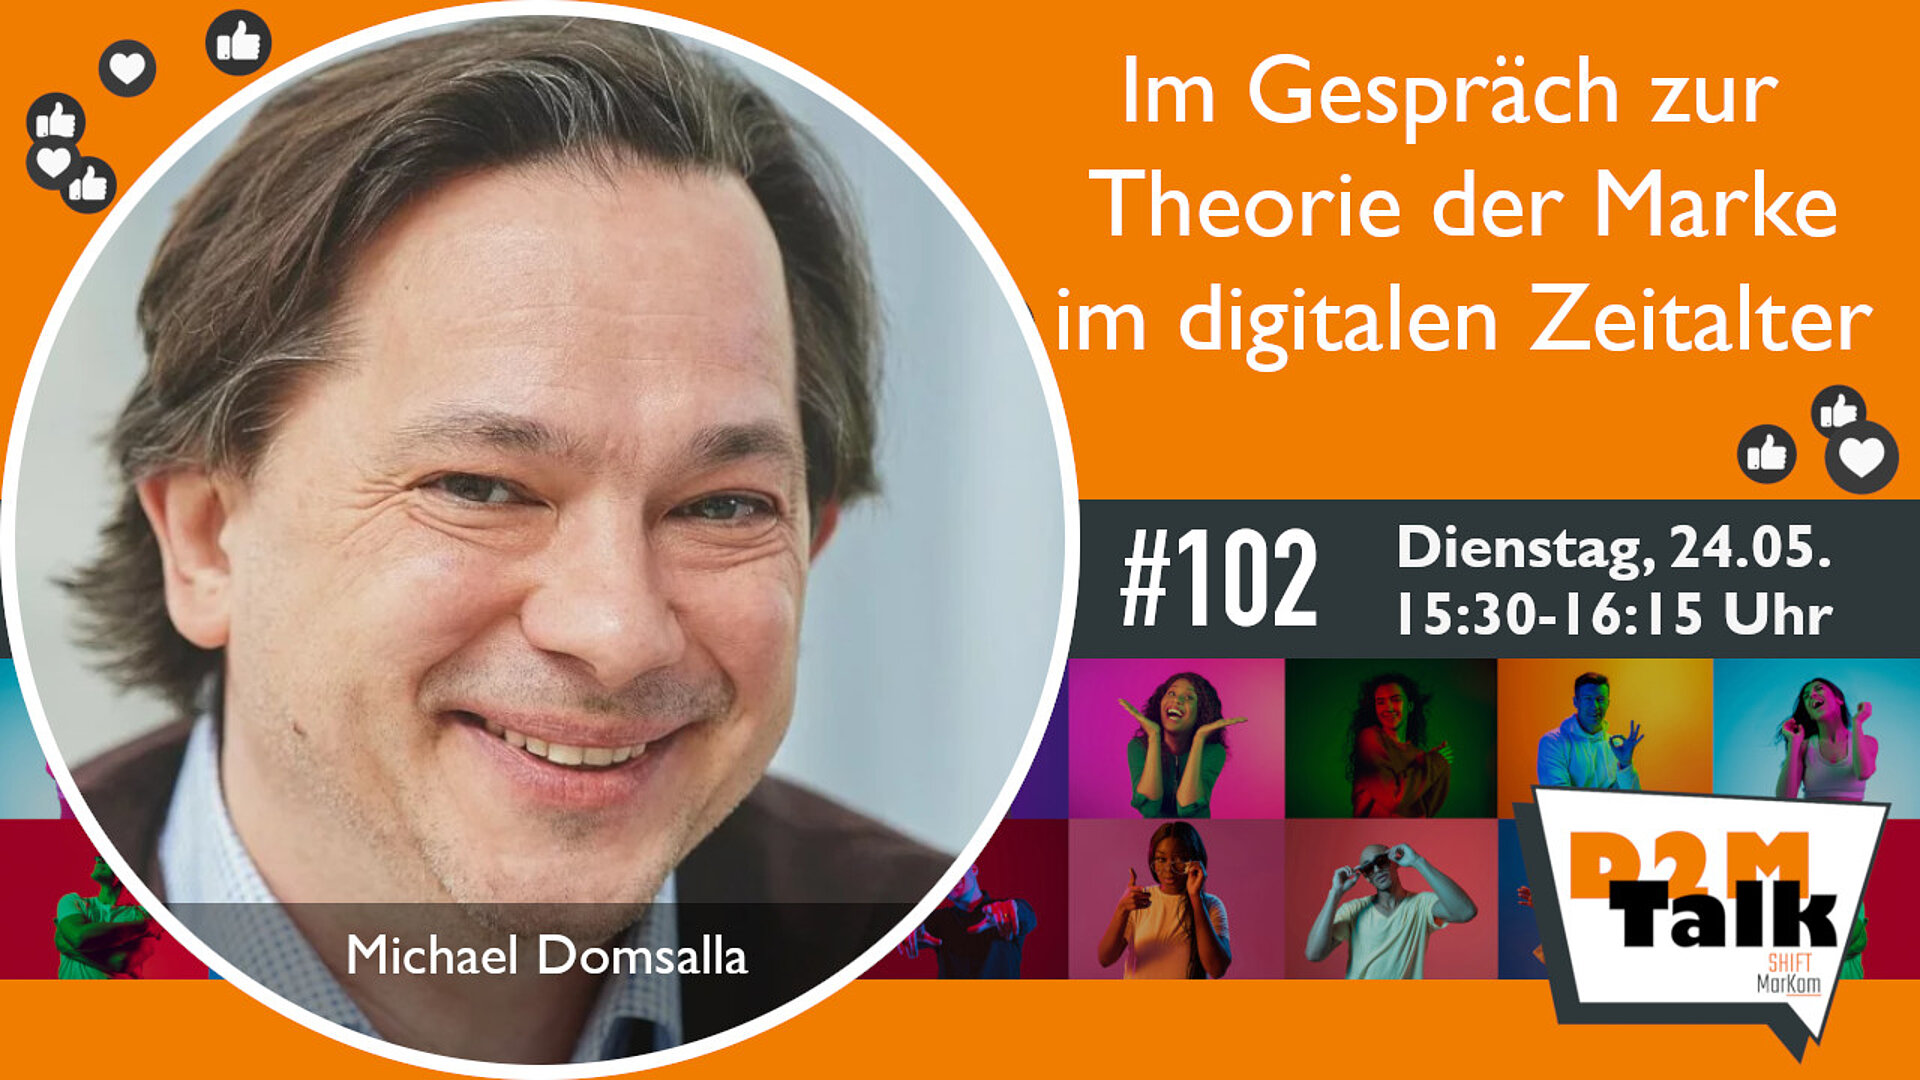 Im Gespräch mit Michael Domsalla zur Theorie der Marke im digitalen Zeitalter